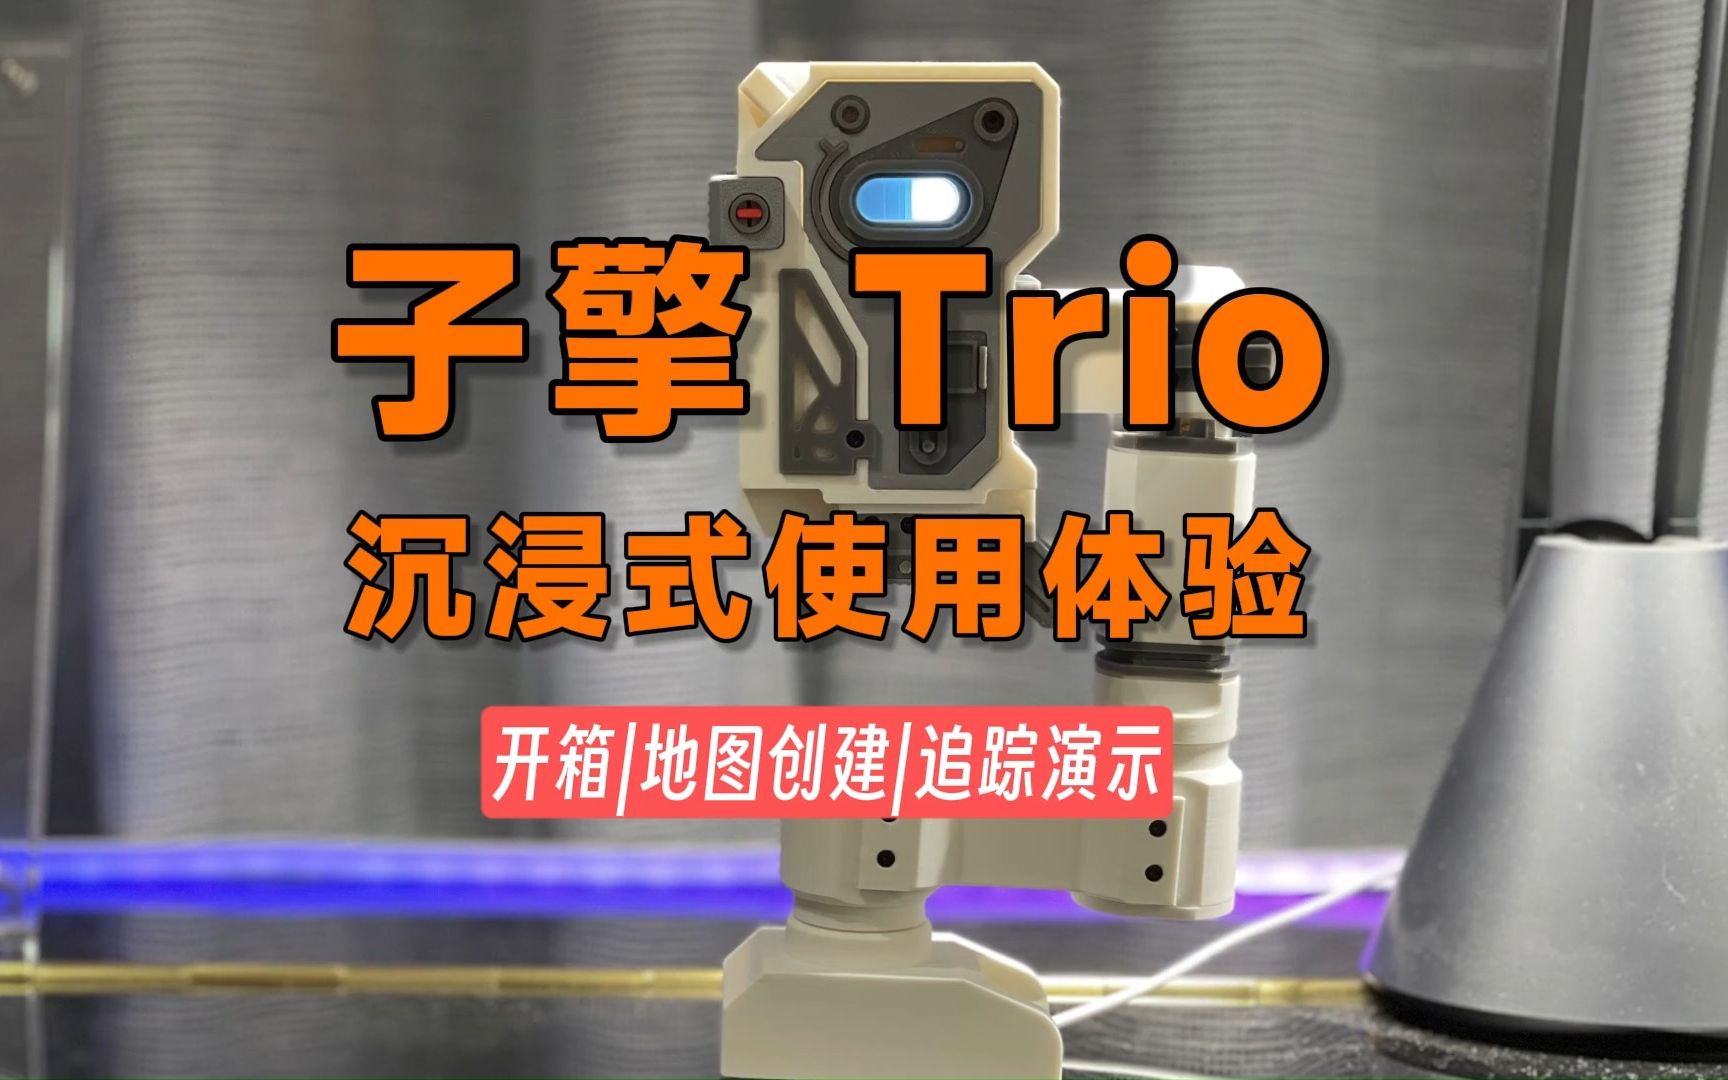 子擎Trio存在传感器，沉浸式使用体验体验，米家首款空间区域传感器